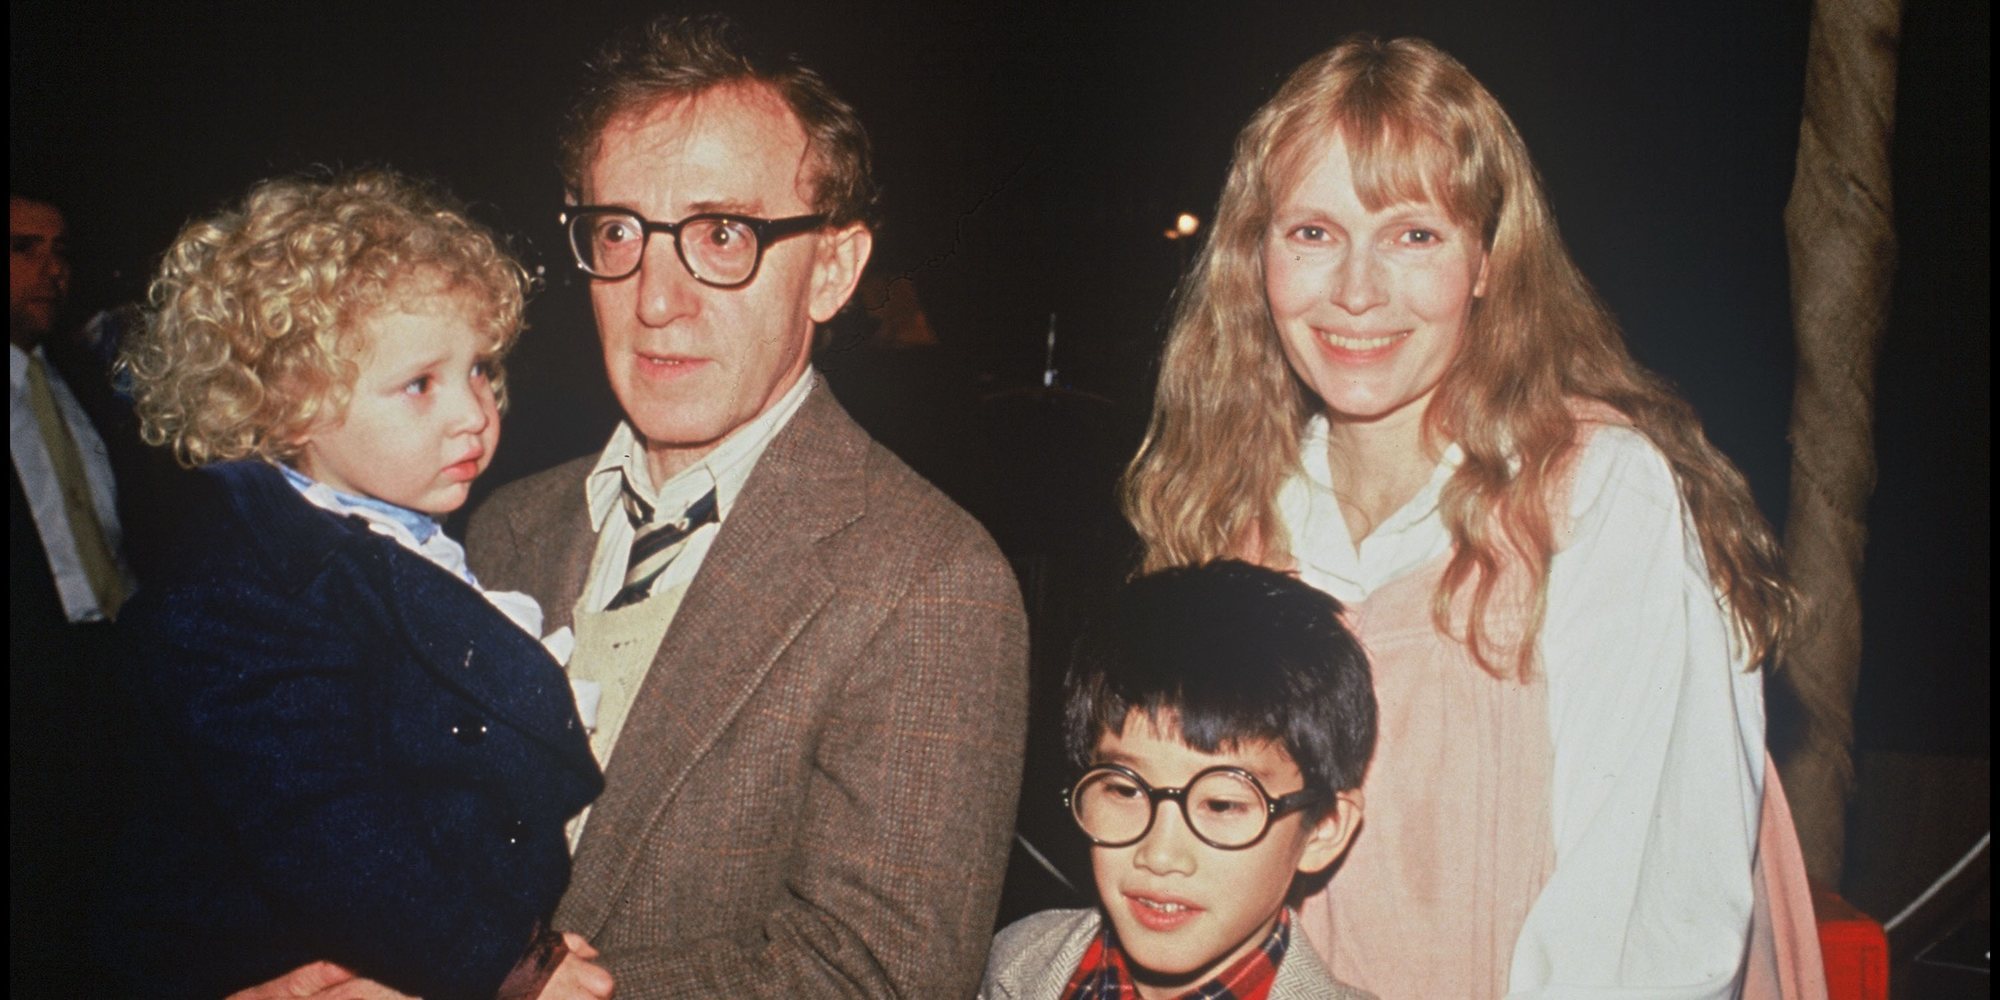 Moses Farrow, hijo de Mia Farrow, sale en defensa de Woody Allen y acusa a su madre de maltratadora